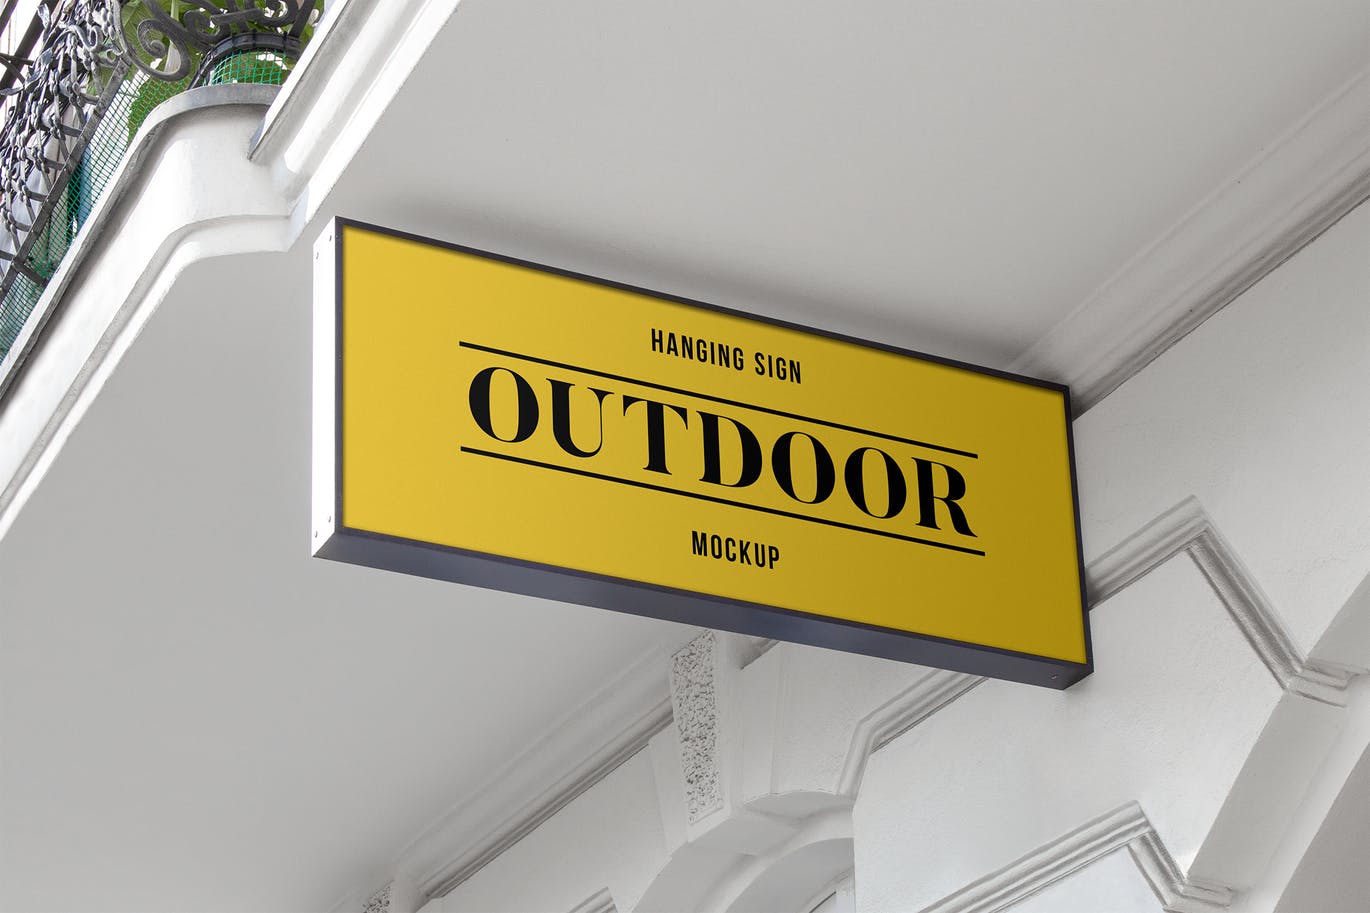 户外悬挂式店招/Logo标志牌样机#1 Outdoor Hanging Logo Sign Mockup #1插图